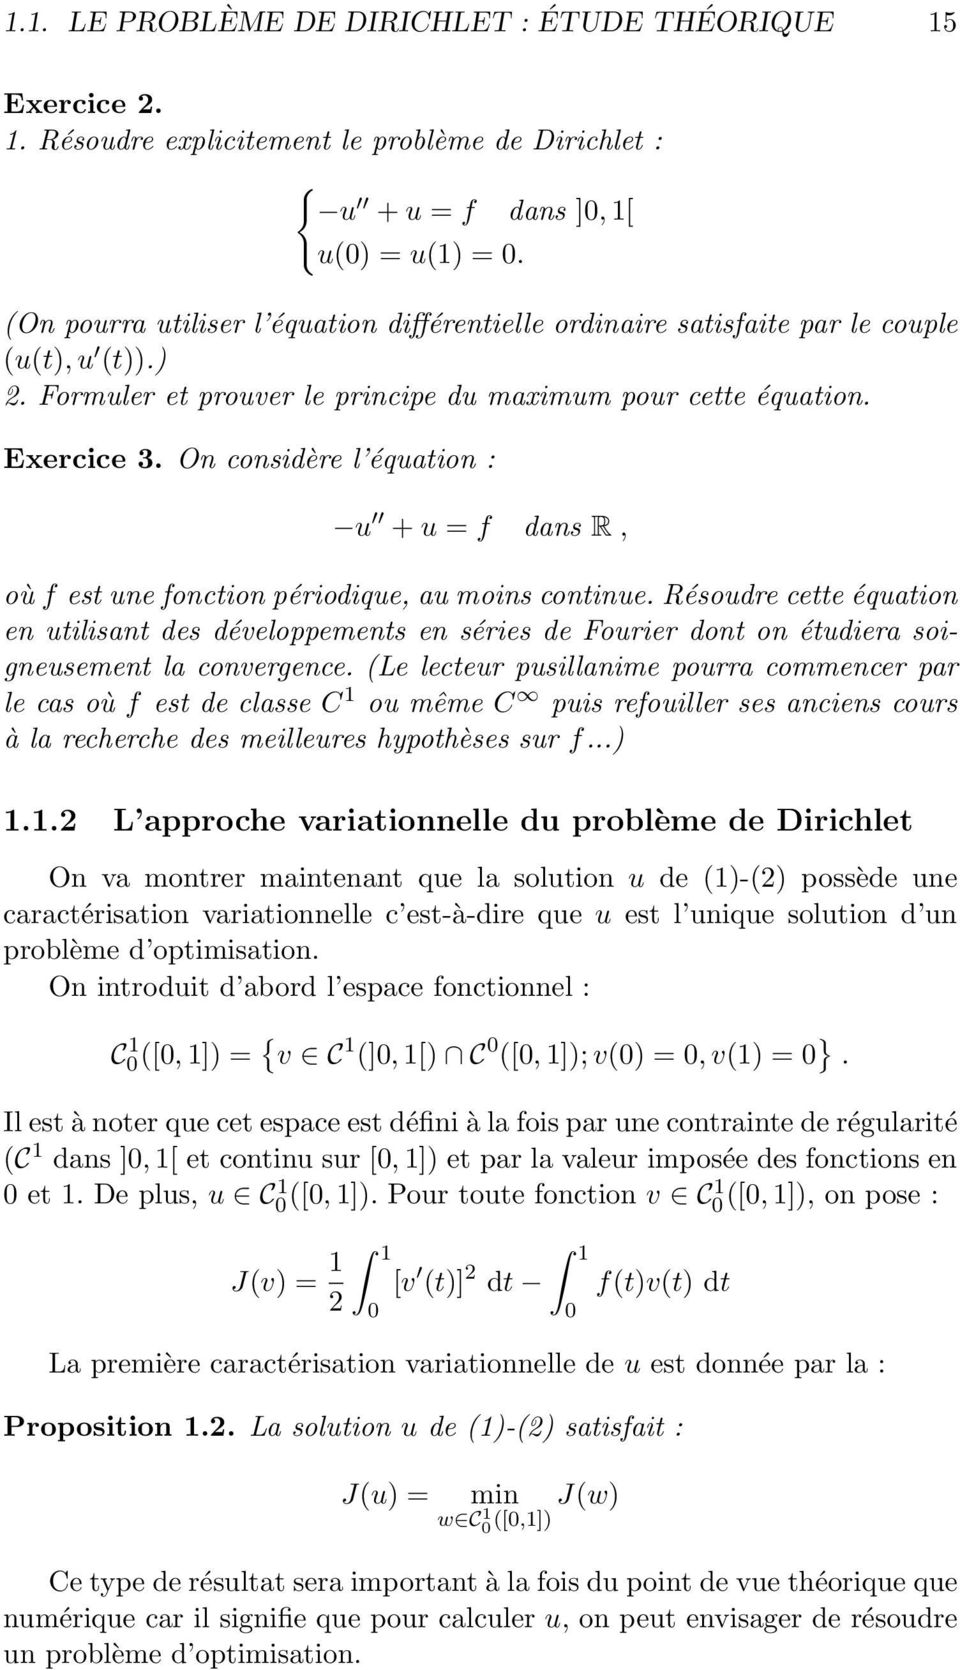 périodique, au moins continue Résoudre cette équation en utilisant des développements en séries de Fourier dont on étudiera soigneusement la convergence (Le lecteur pusillanime pourra commencer par